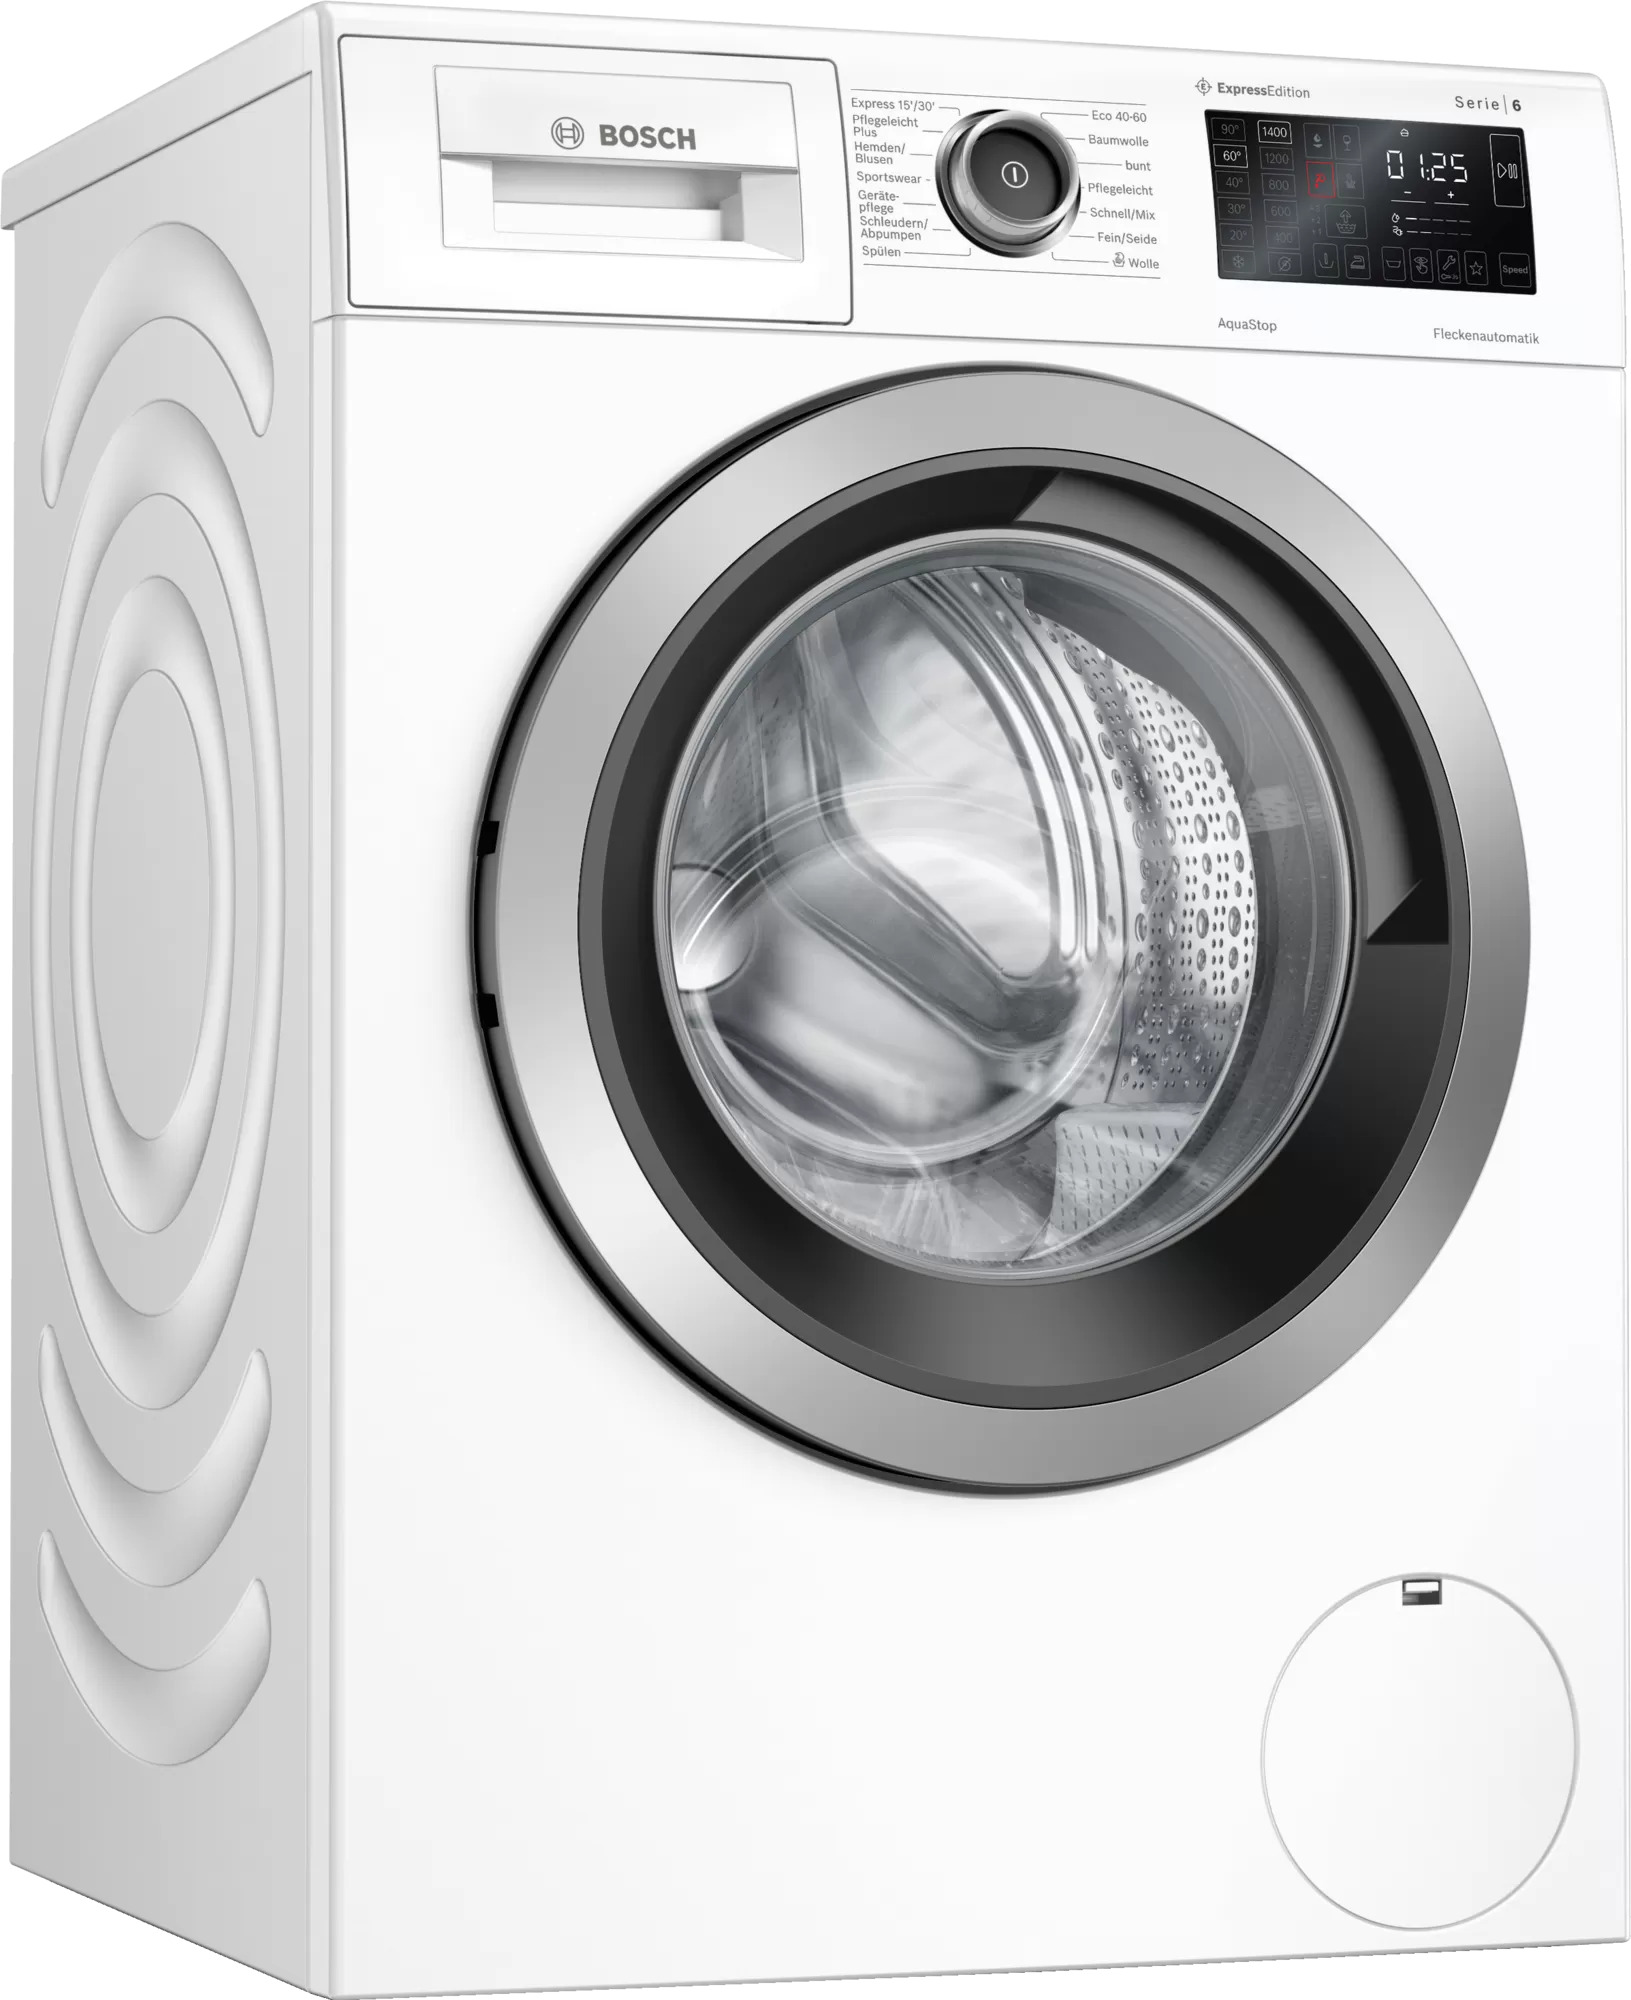 Waschmaschine - stand weiß | Haus 9kg 1400 WAU28RH0 der Elektronik U/min Bosch Akatronik